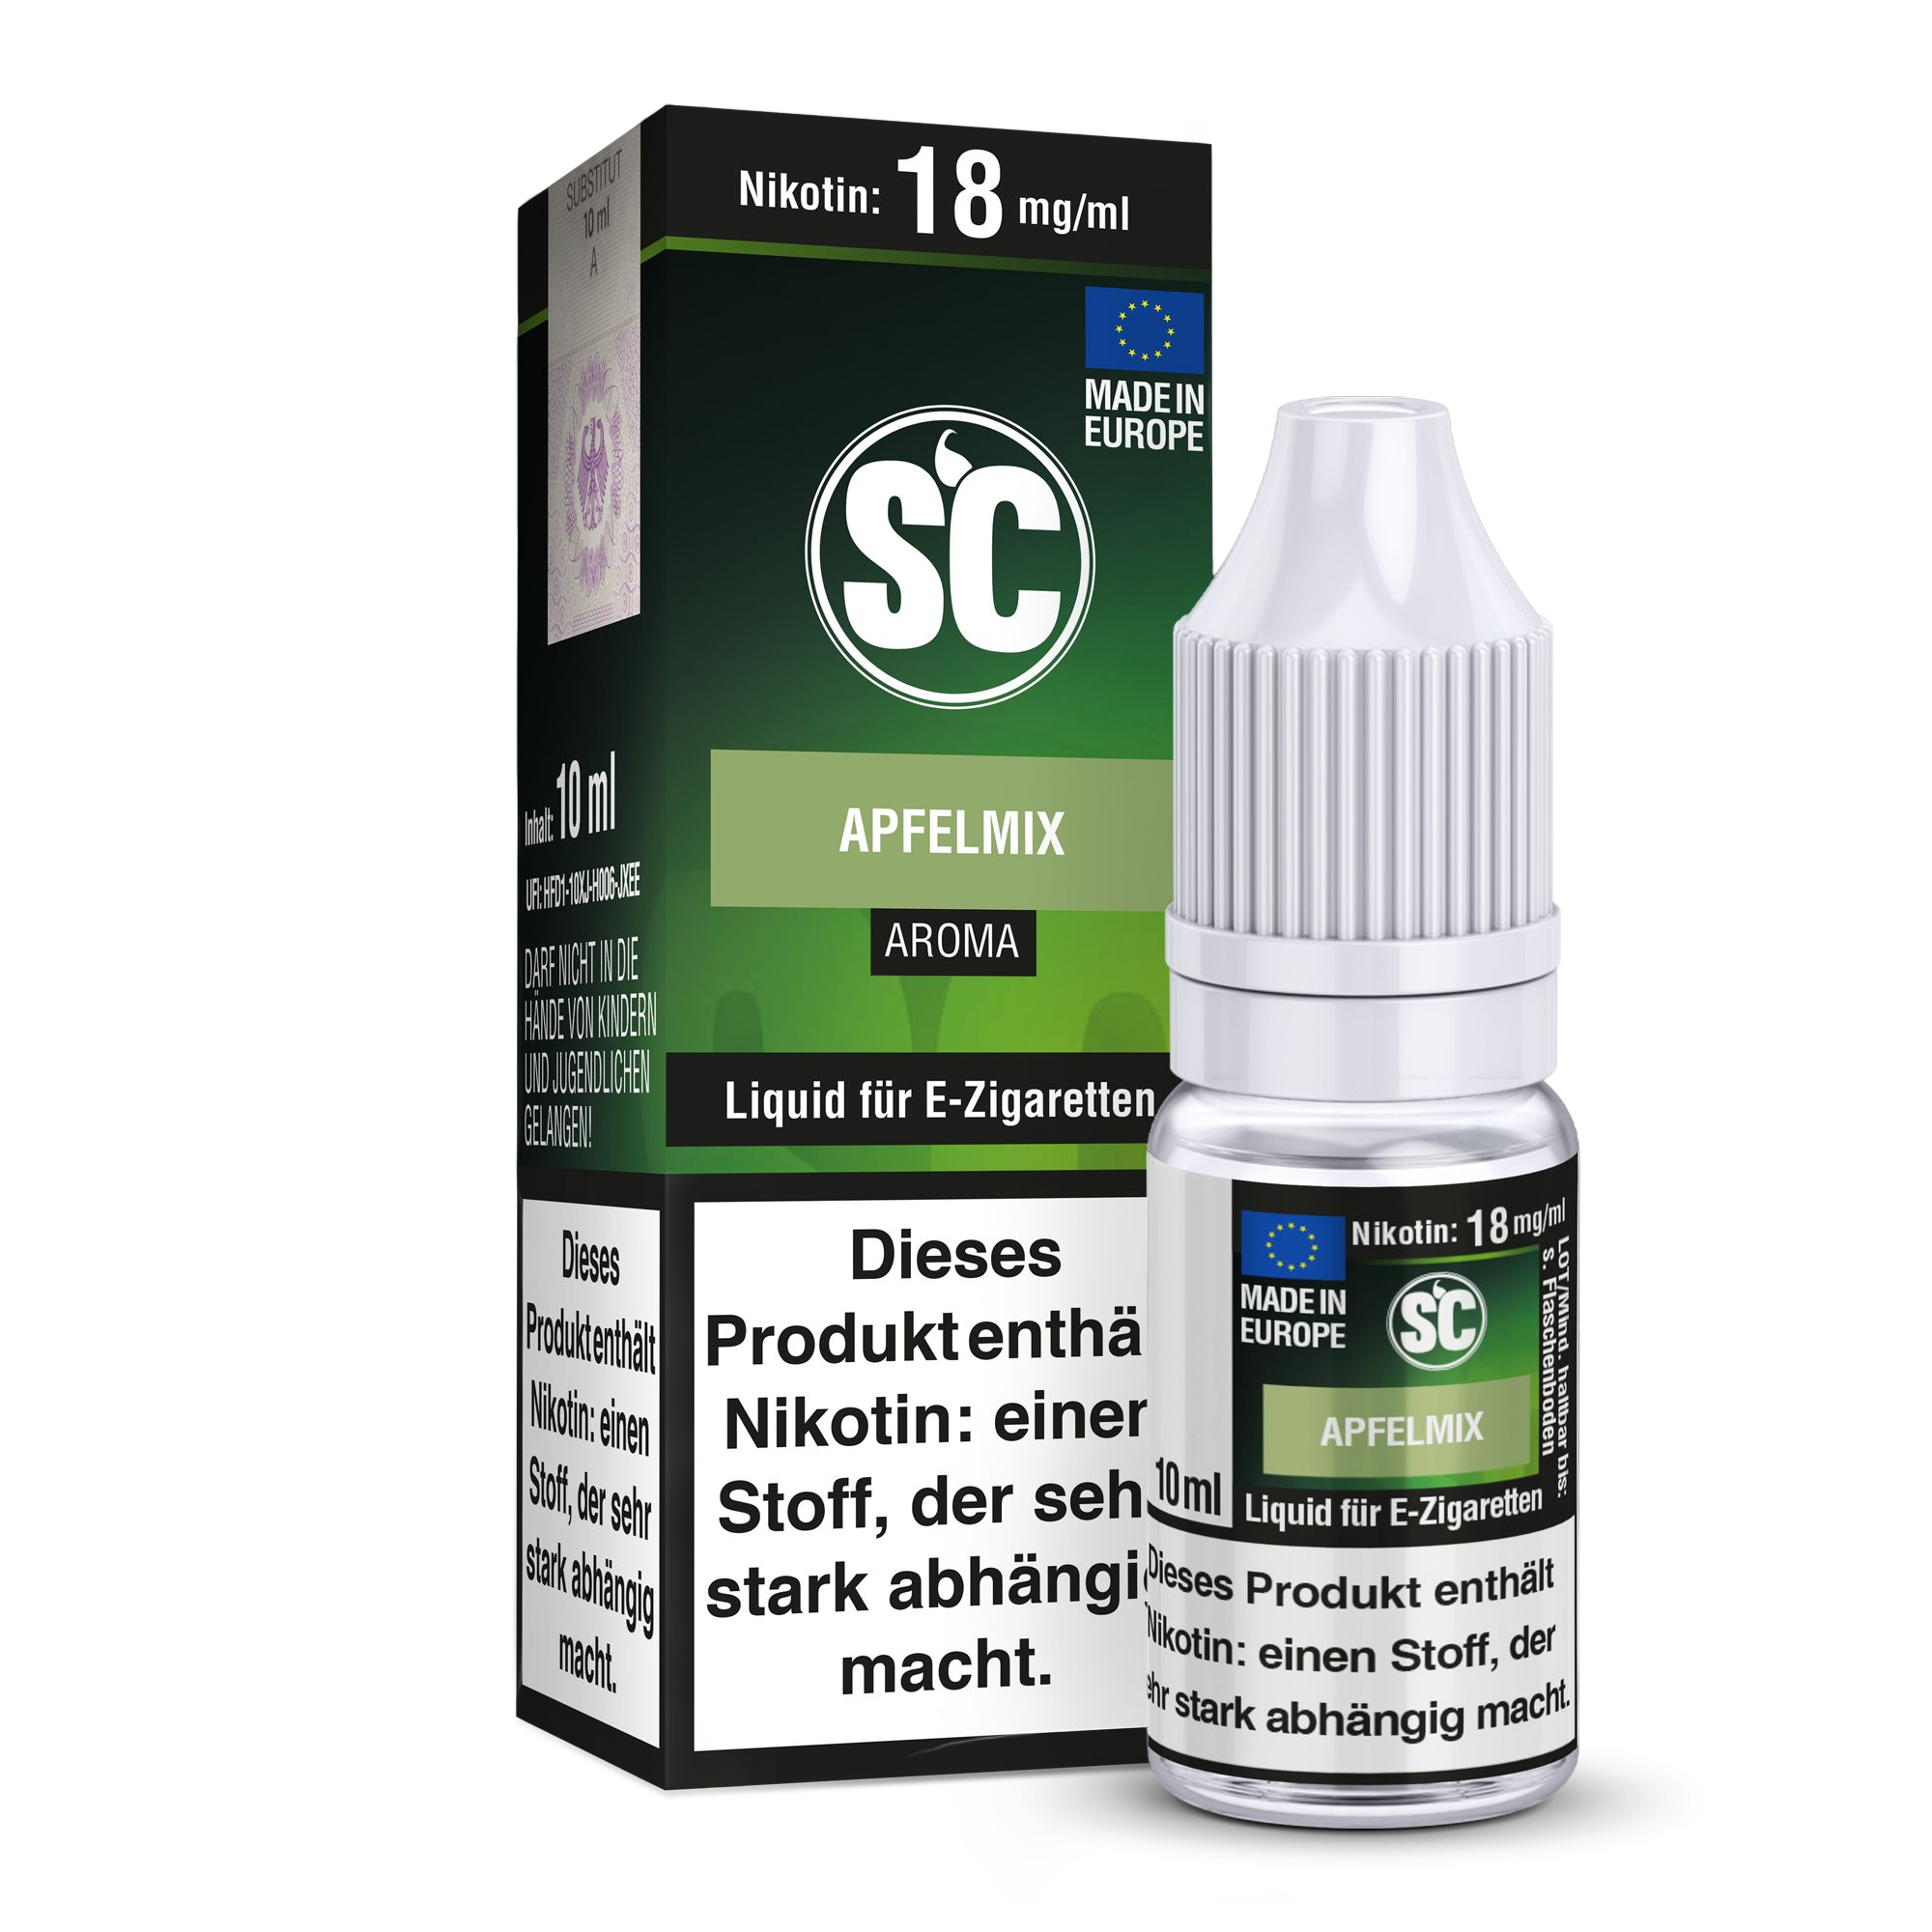 SC - Apfelmix Liquid 6 mg/ml